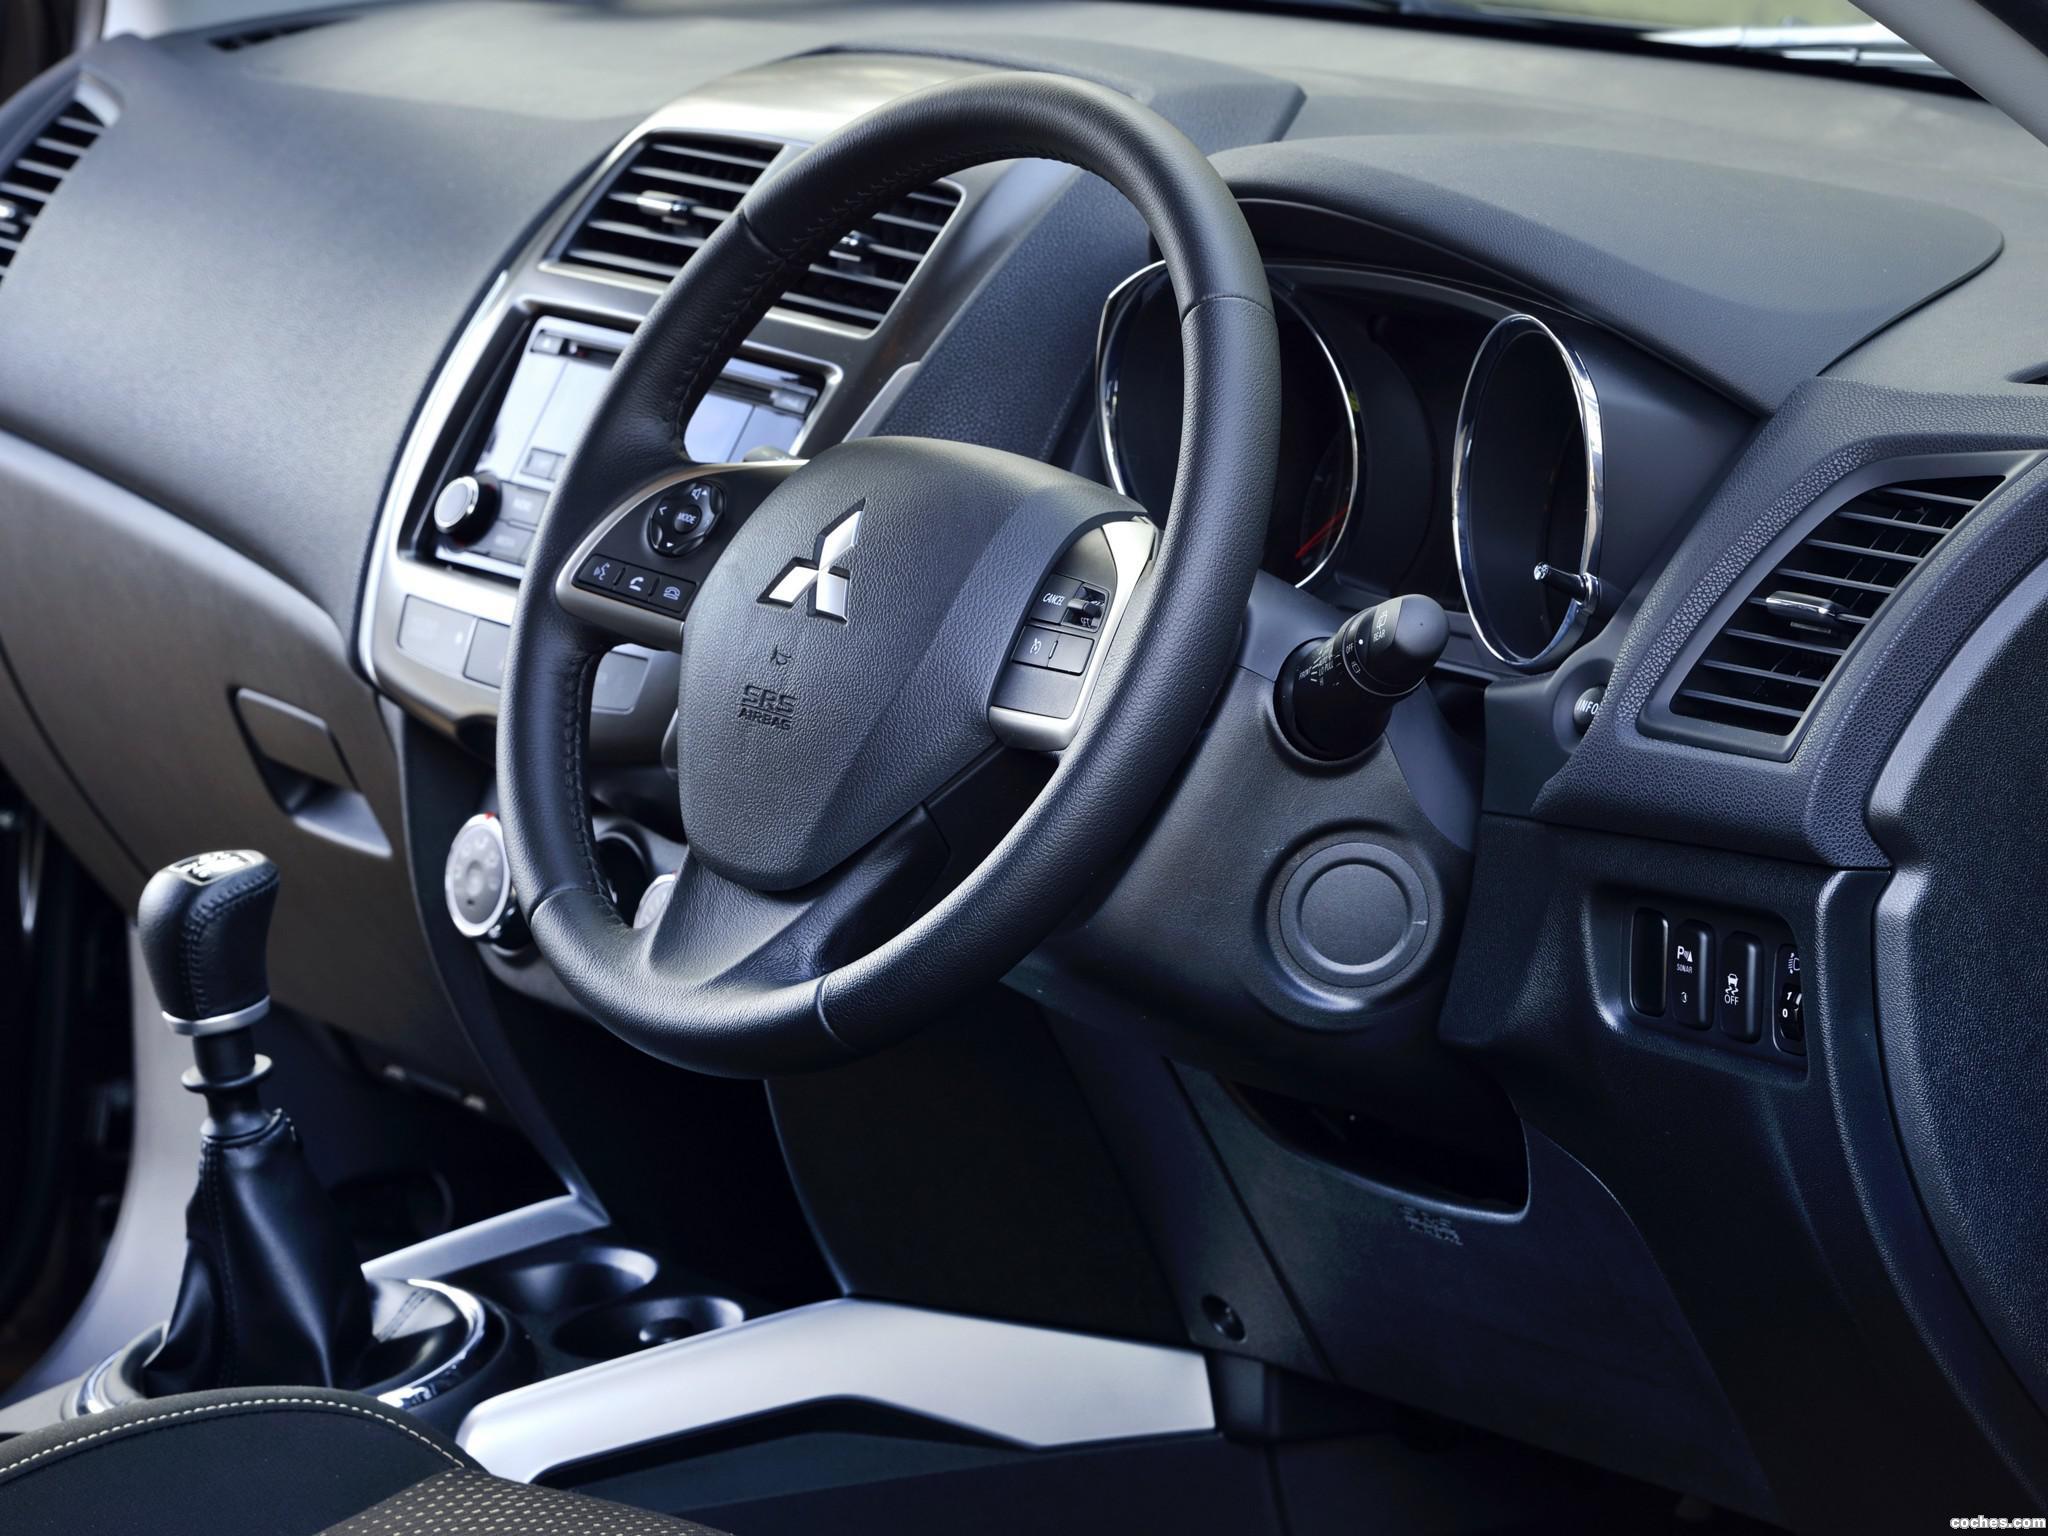 Установка кнопок управления аудиосистемой и круиз-контролем на руль Mitsubishi ASX фото